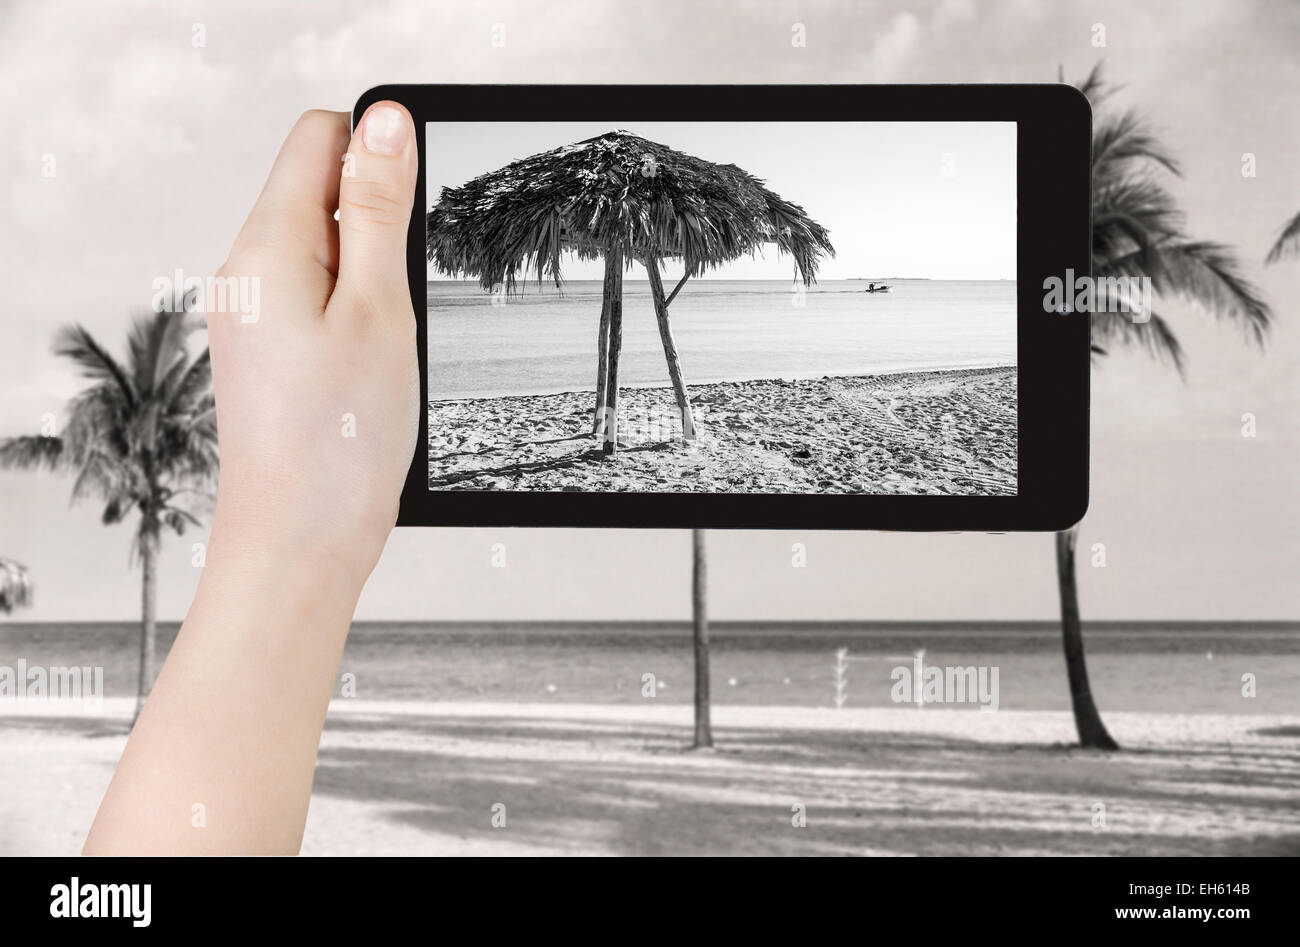 Reisen Sie Konzept - Touristen nehmen Foto von Strand in Varadero auf mobile Gadget, Kuba Stockfoto